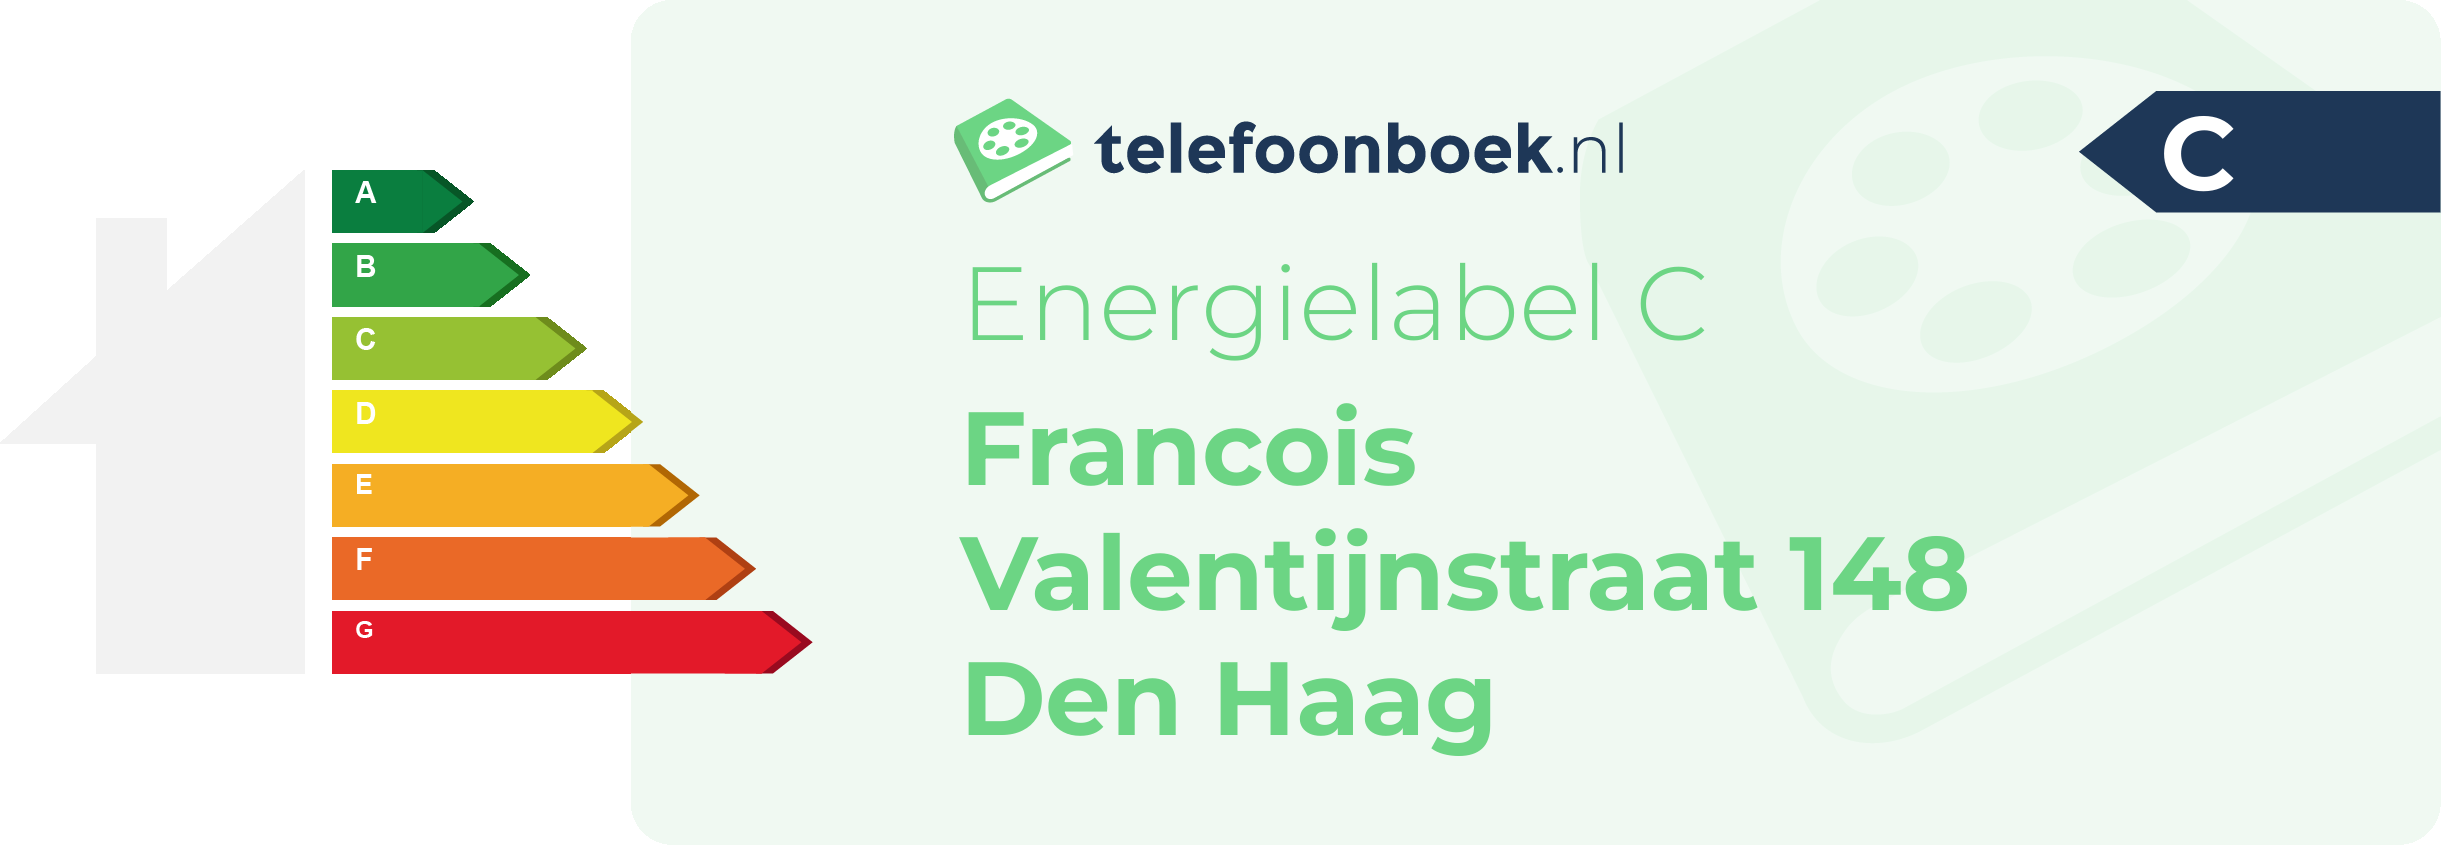 Energielabel Francois Valentijnstraat 148 Den Haag